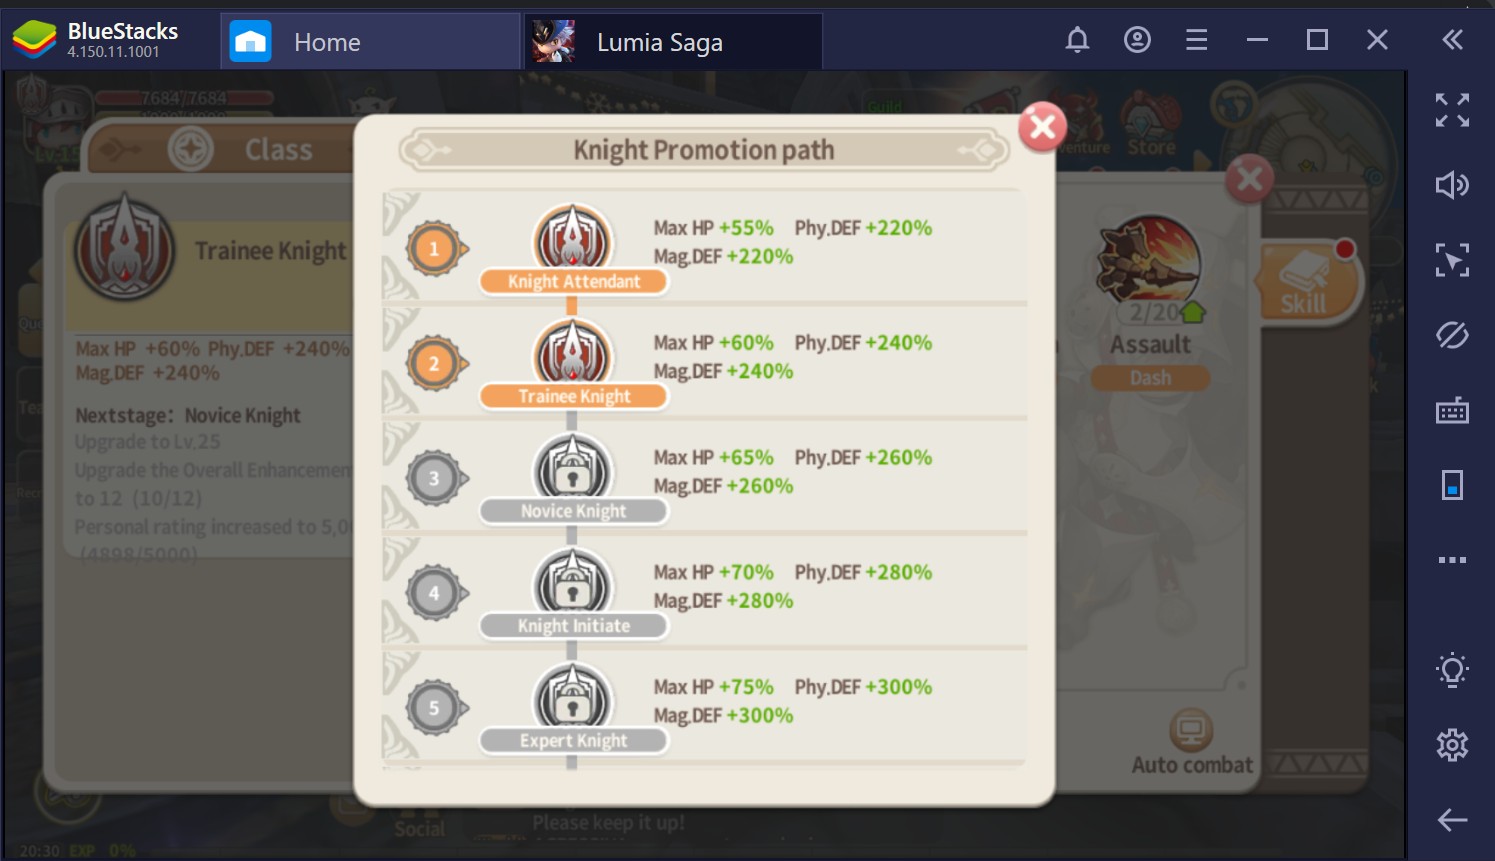 Lumia Saga: dicas e truques para evoluir no game